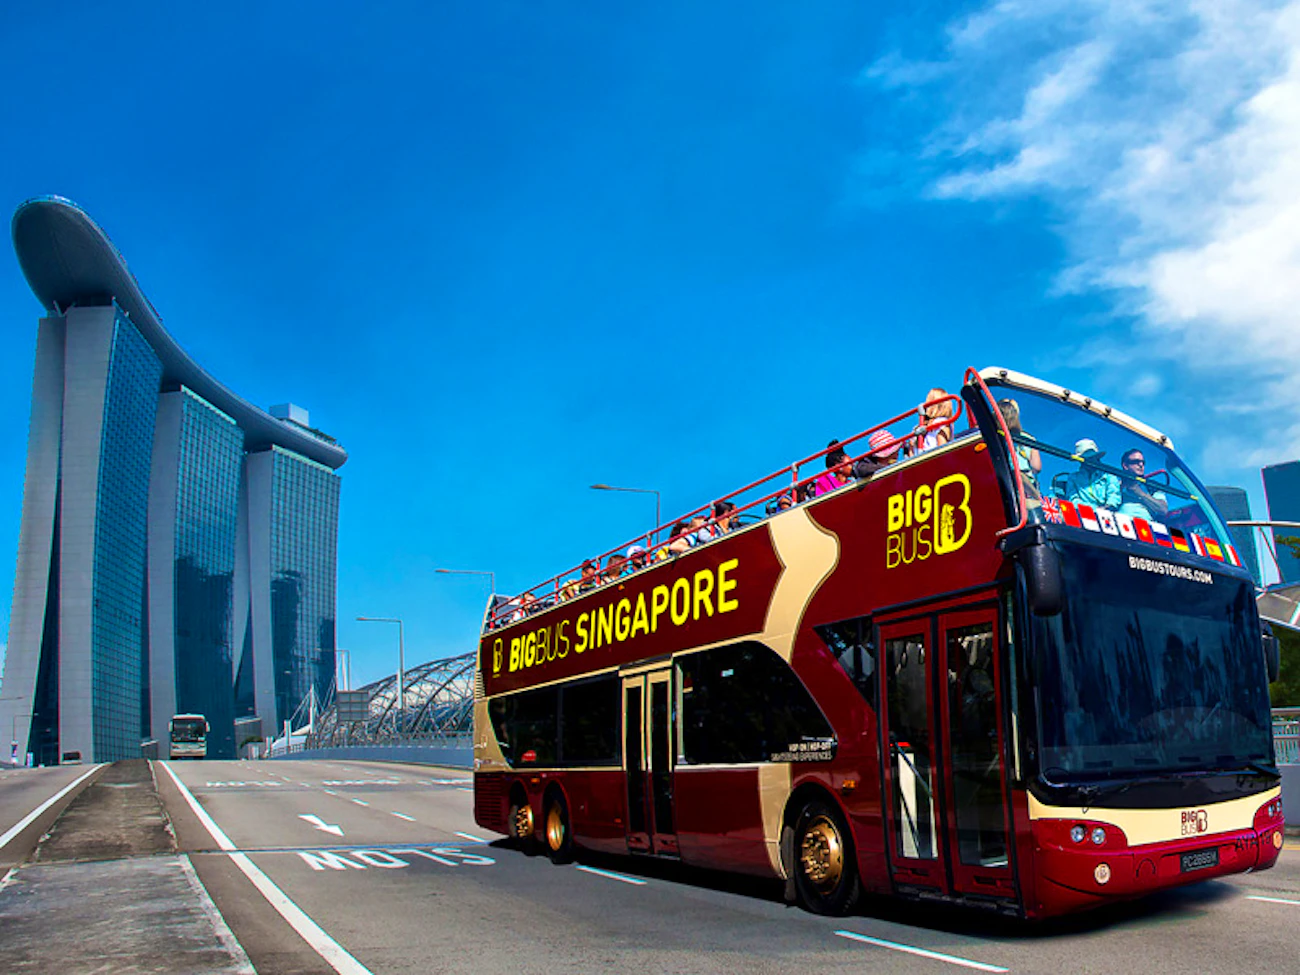 Big Bus Singapore Hop on Hop off Tour 